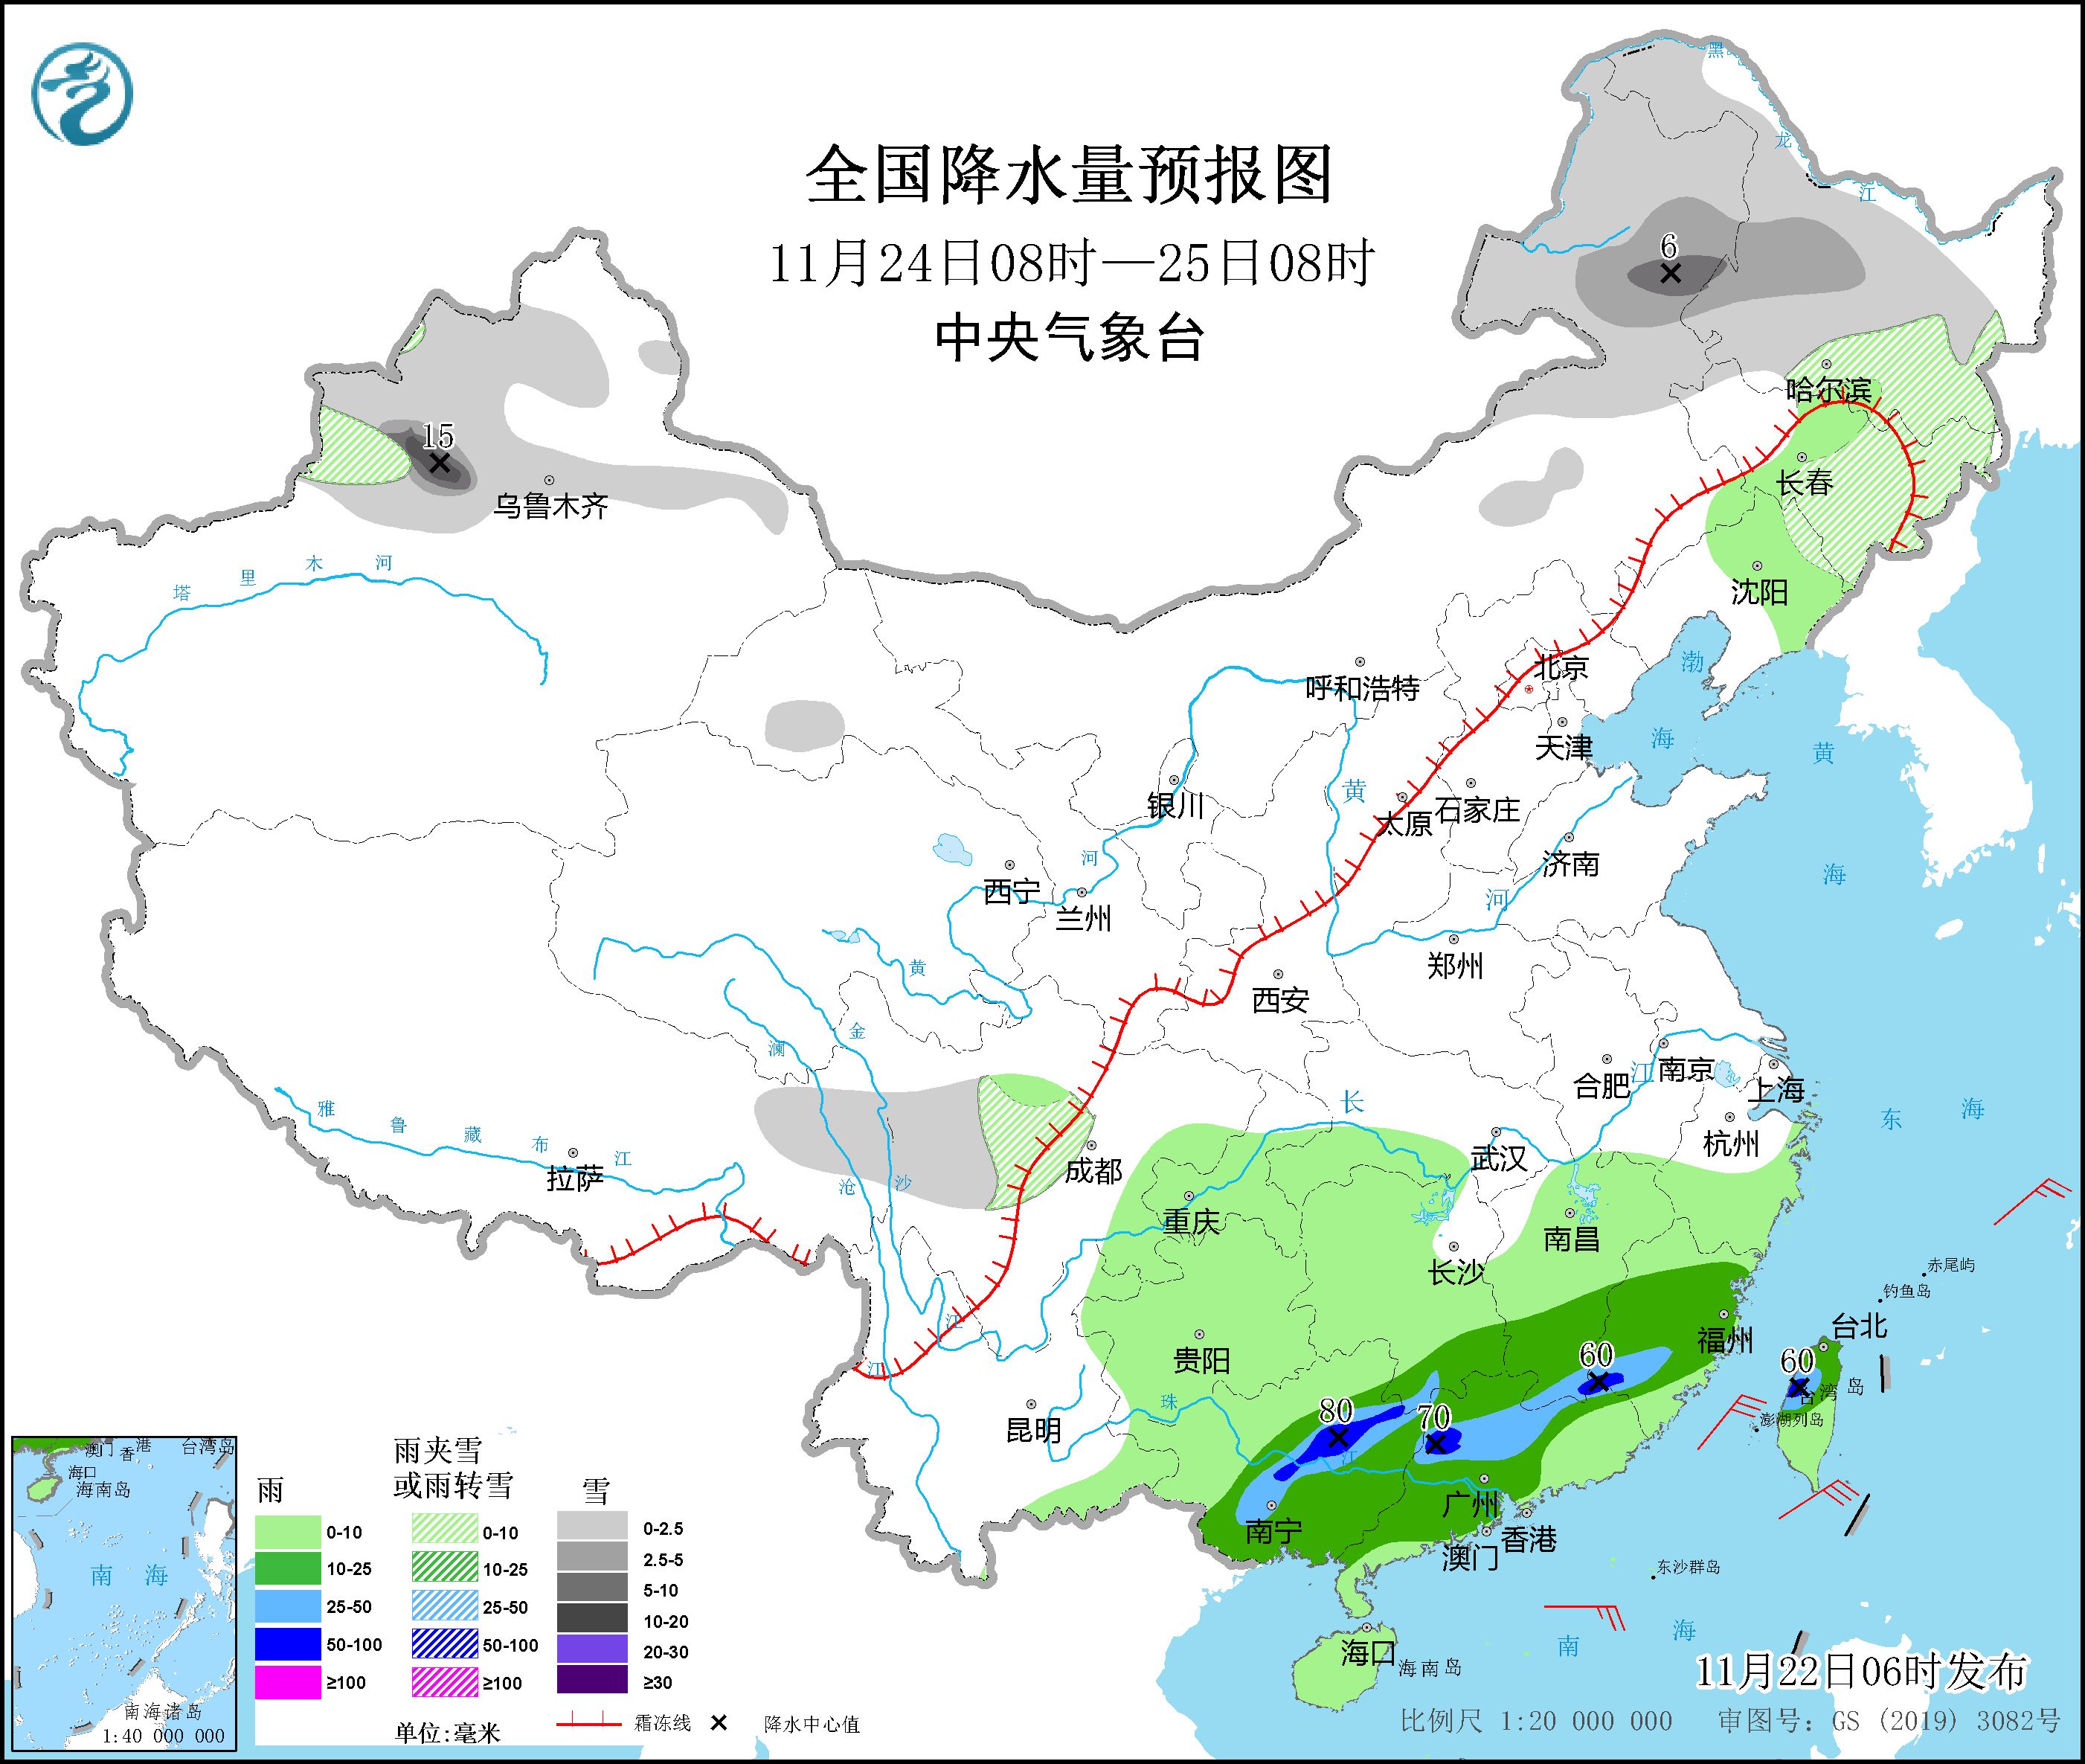 华南地区将有明显降雨 新疆北部将有较强雨雪